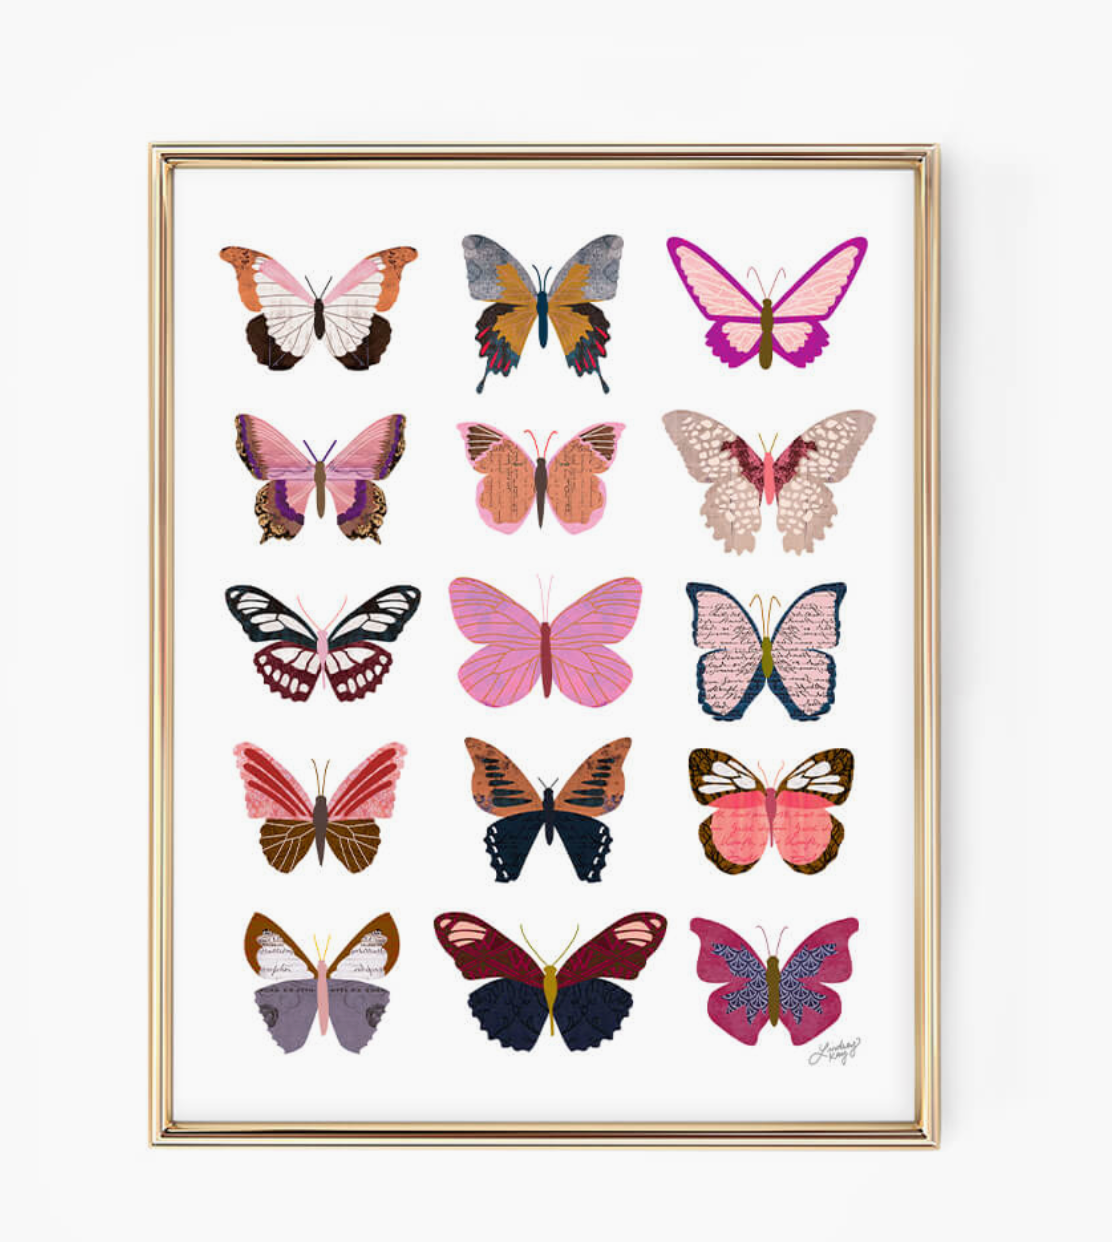 Pink Butterflies Art Print